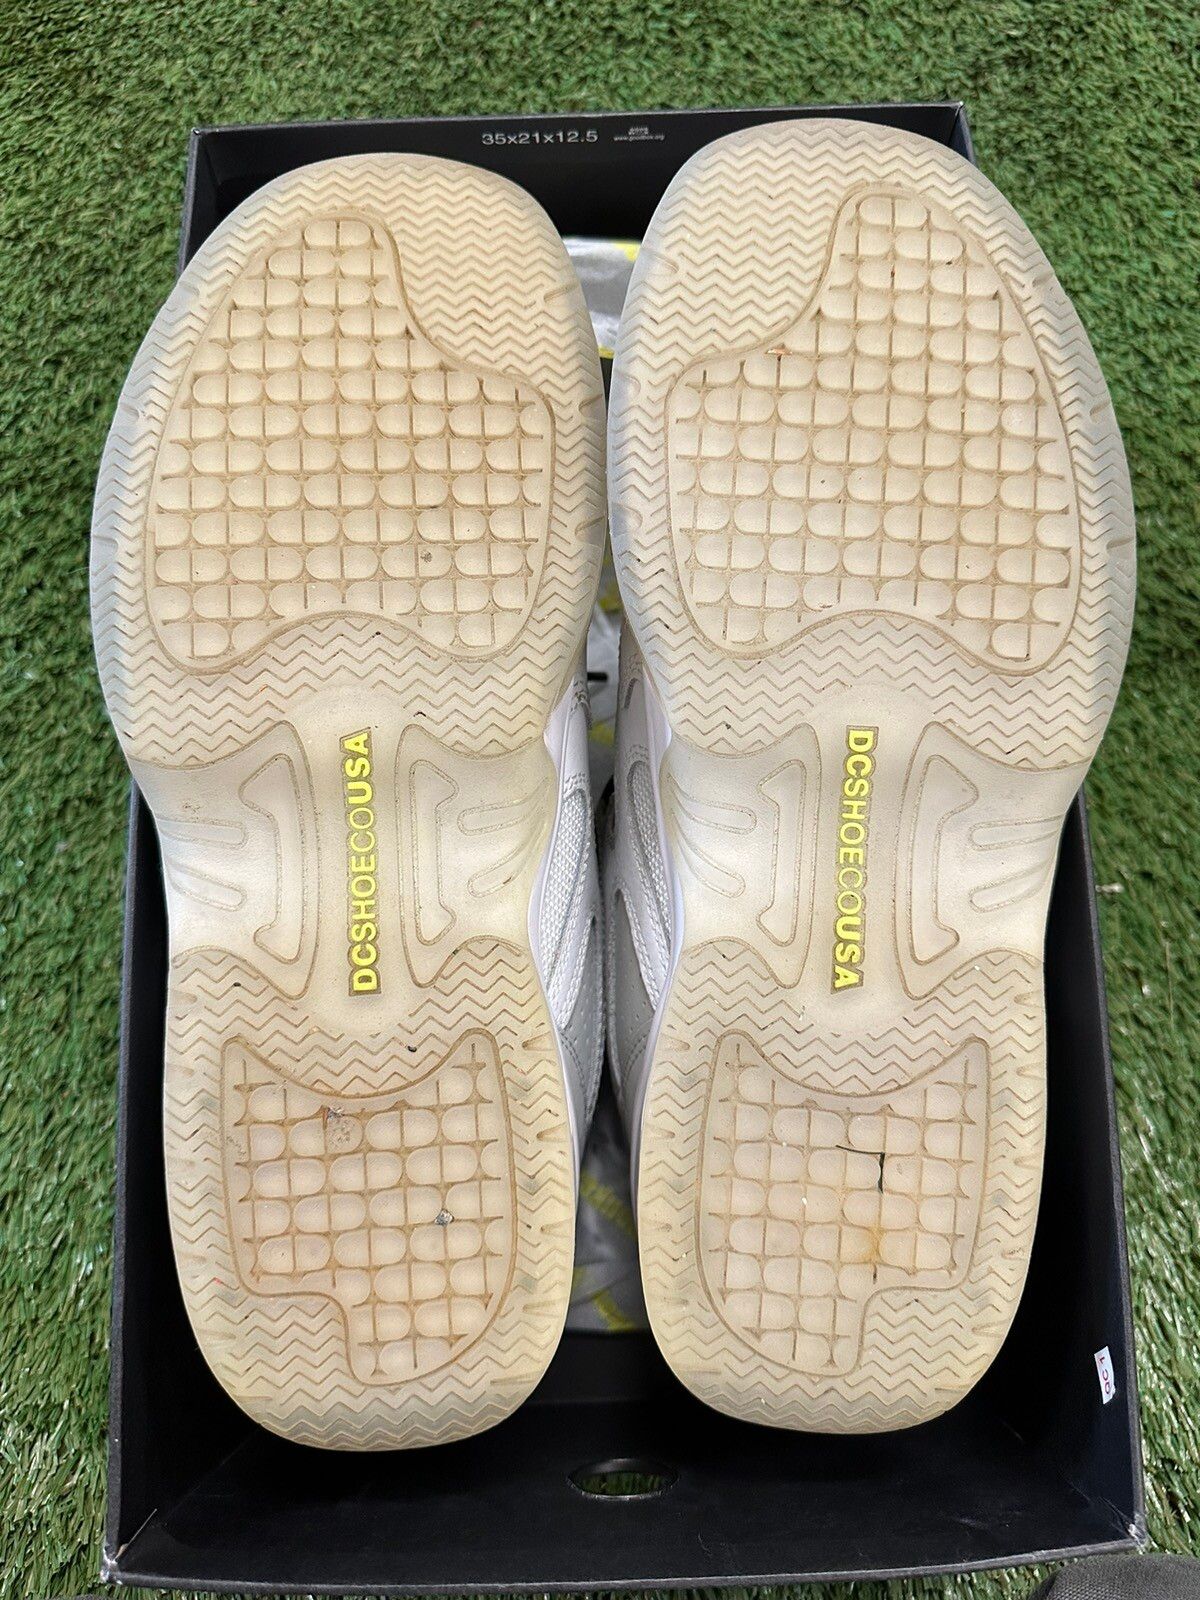 Dc DC Shoes Kalis OG x Monkey Time White/Grey 10.5 Size US 10.5 / EU 43-44 - 2 Preview